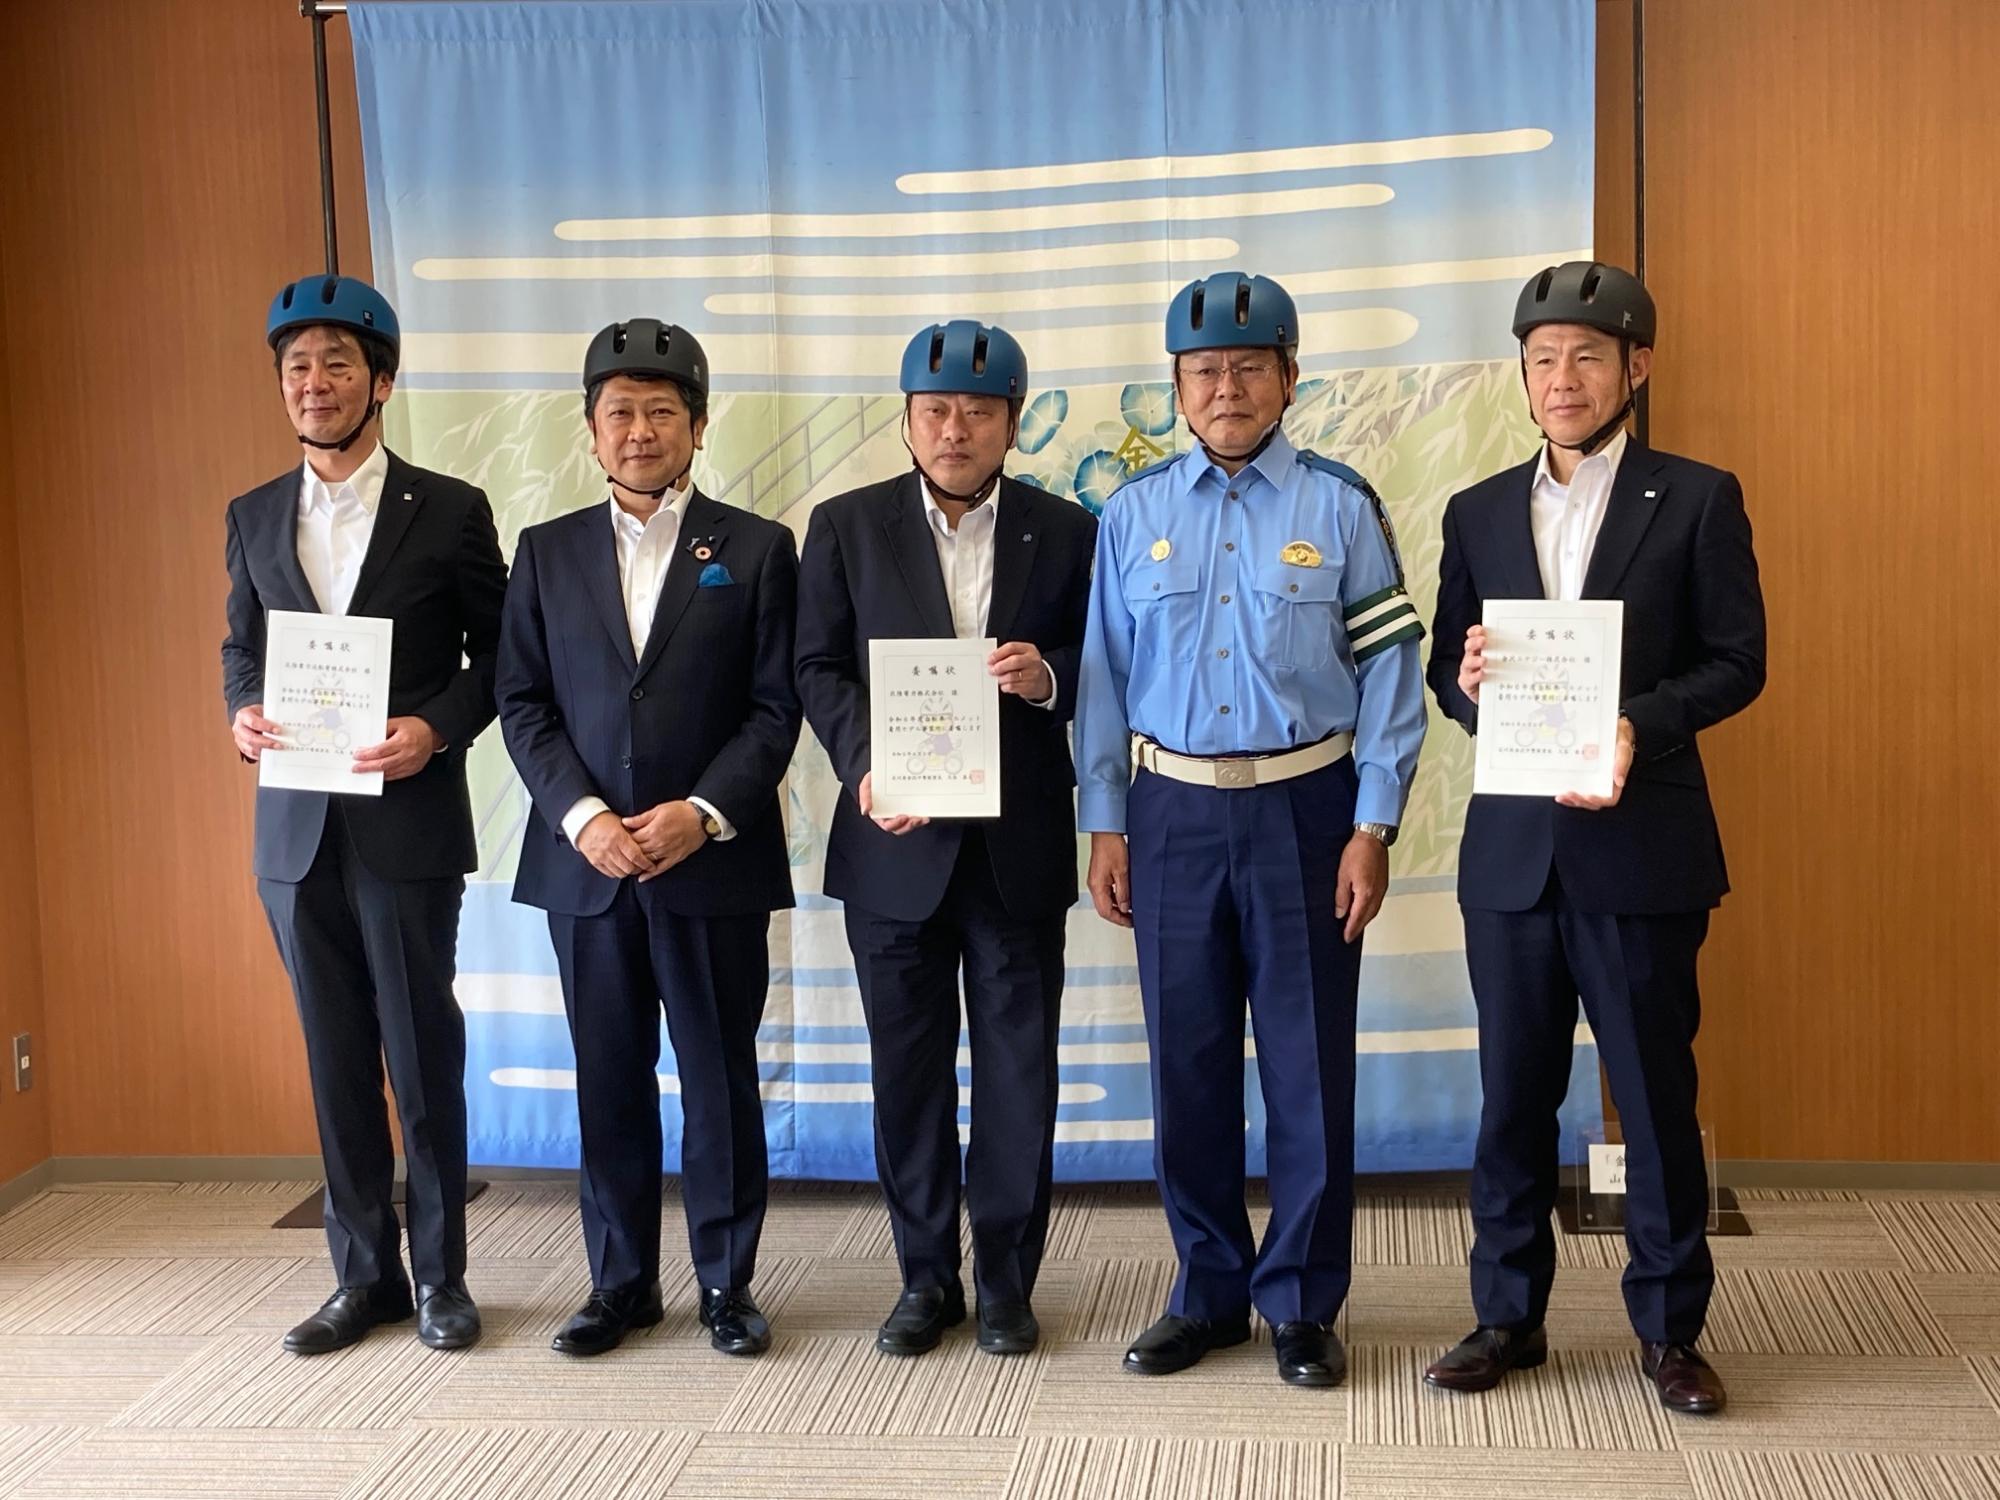 金沢中警察署からの委嘱状交付、金沢市からヘルメット等の贈呈の様子